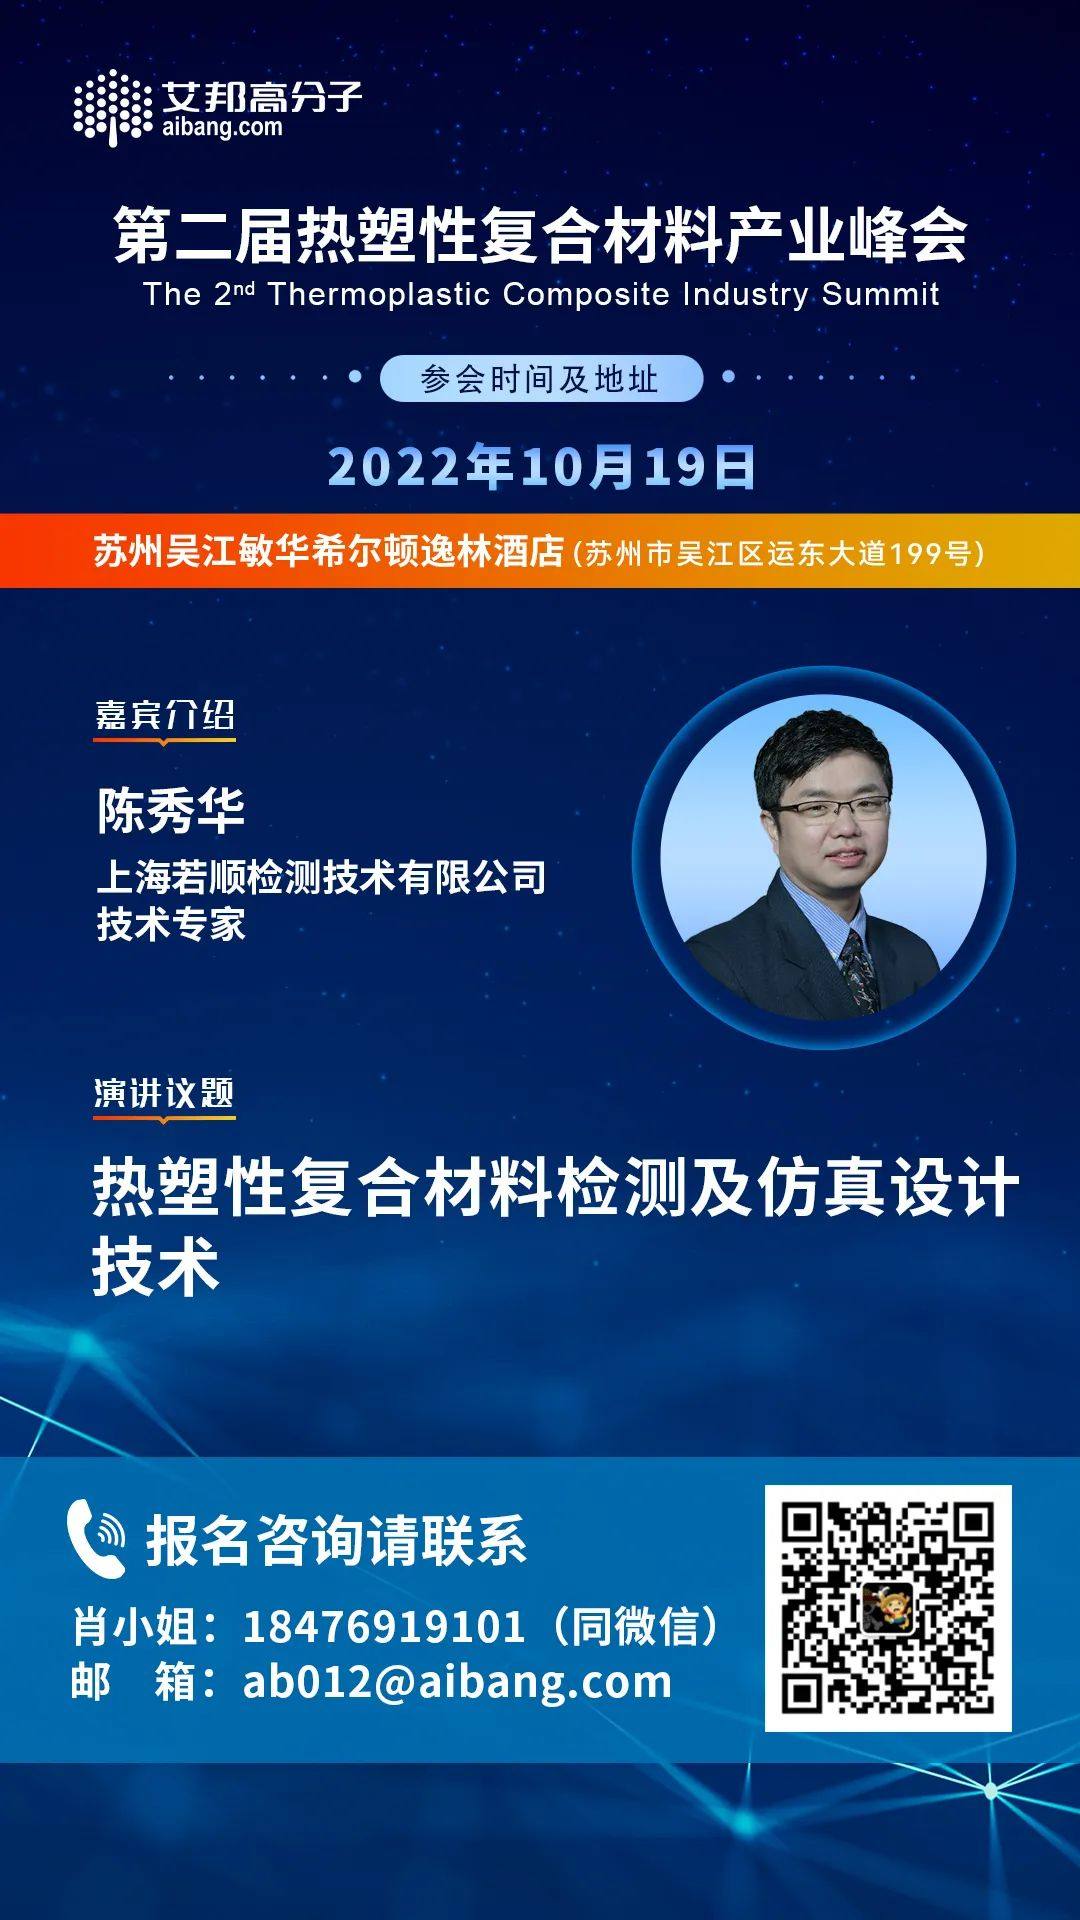 上海若顺检测将出席第二届热塑性复合材料产业峰会并做主题演讲